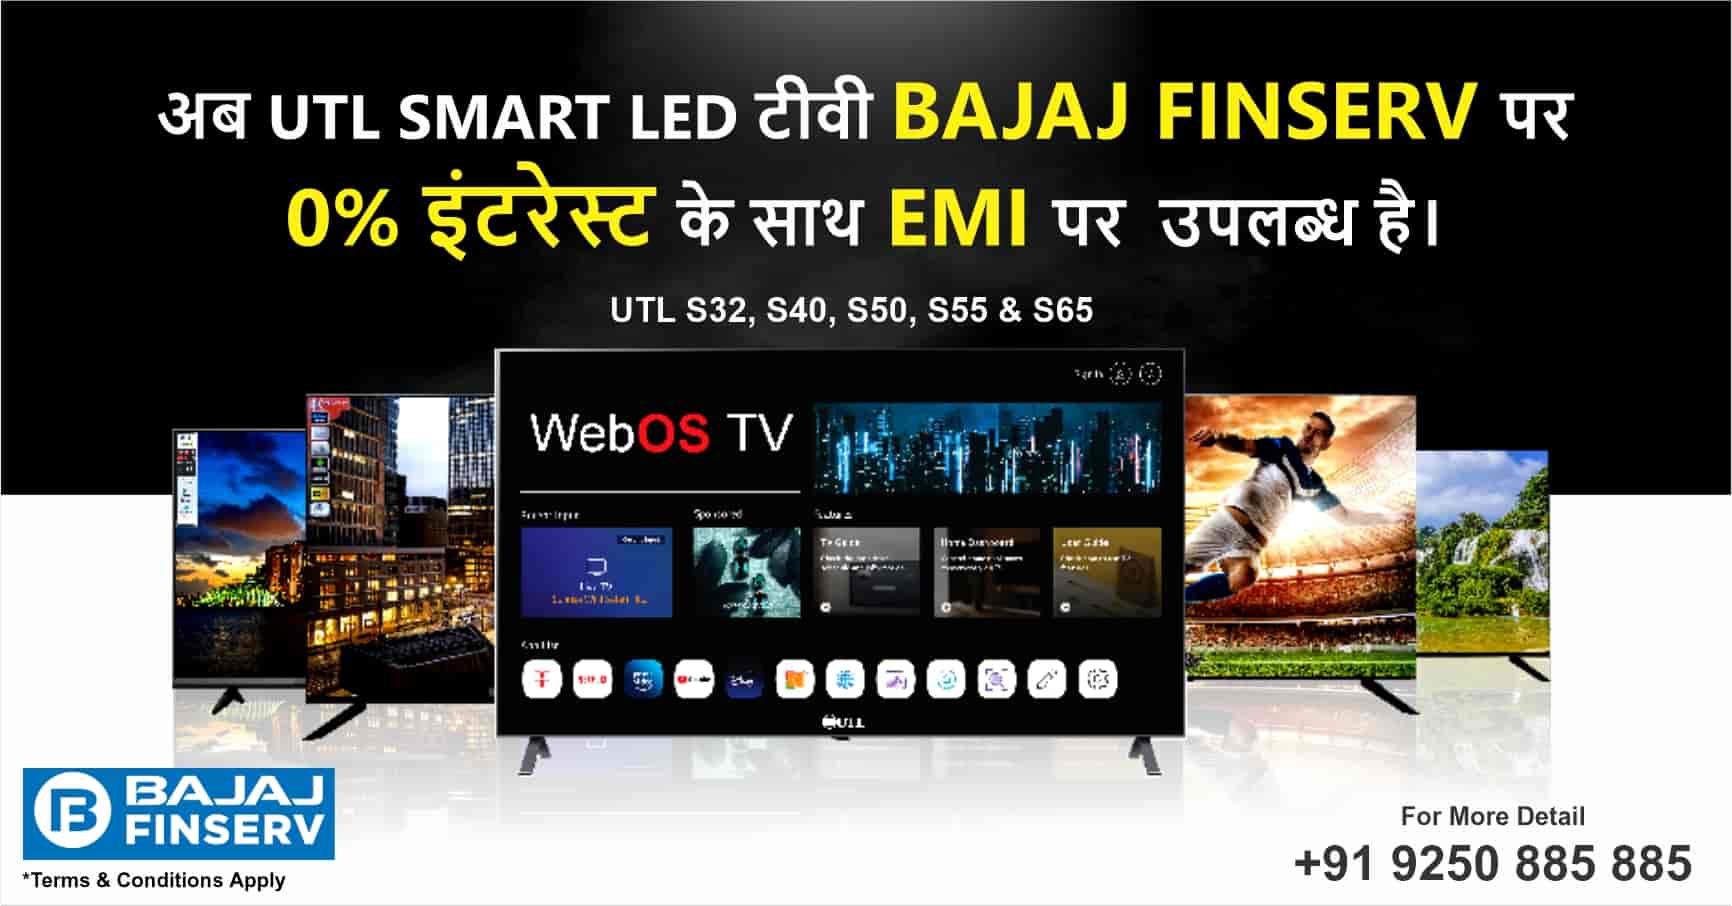 UTL Smart LED TV on EMI